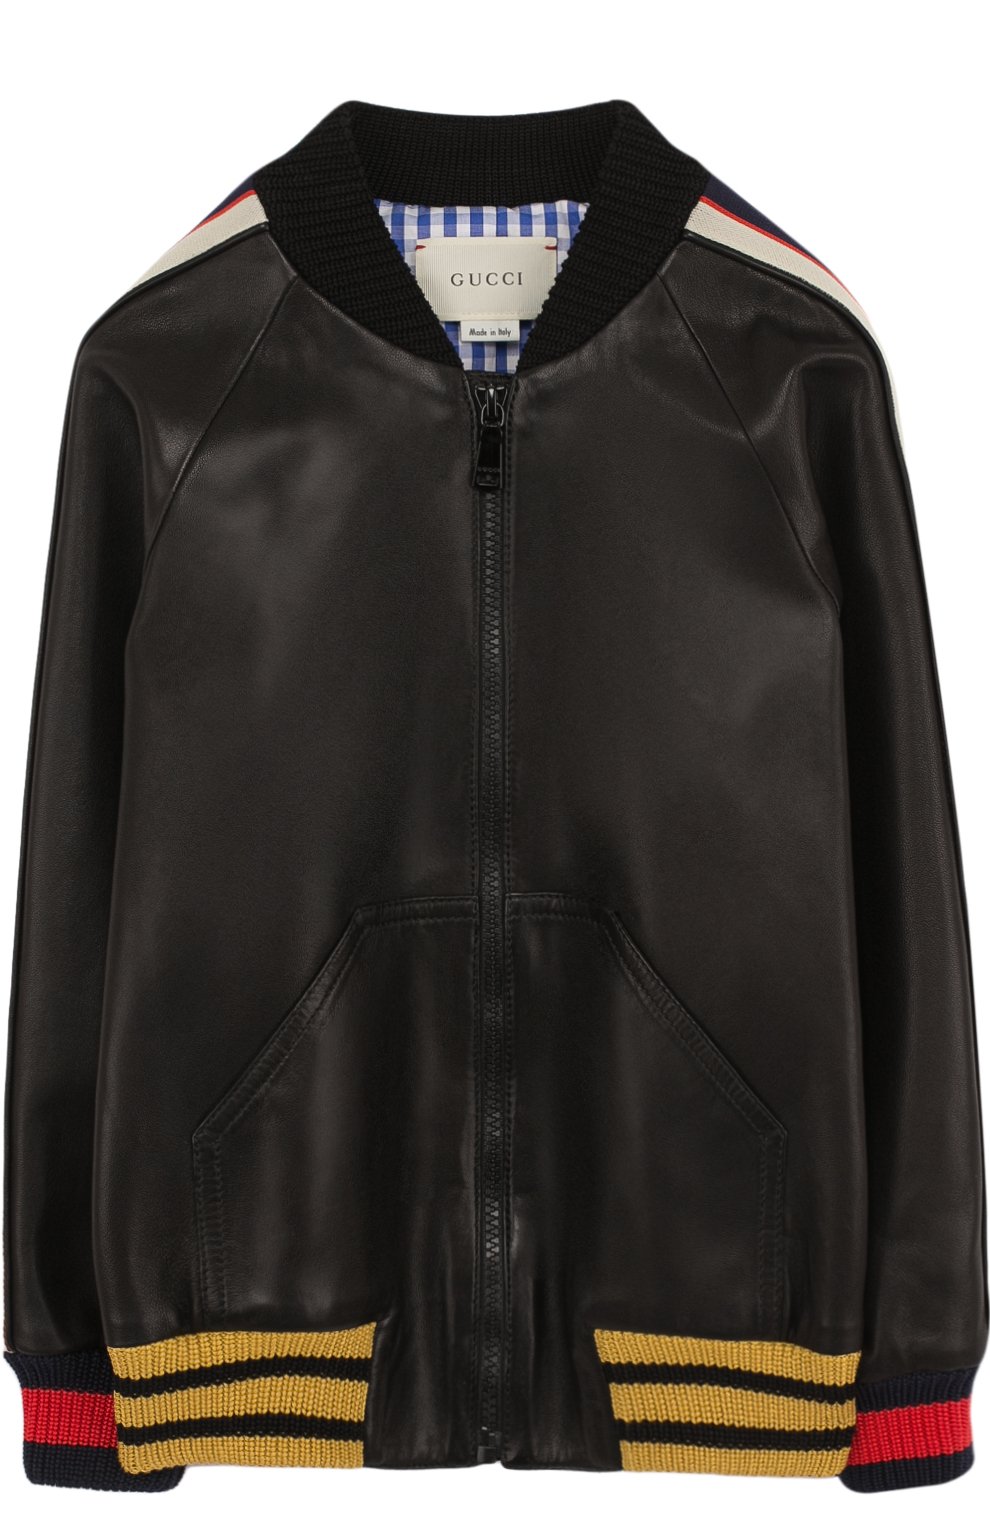 Верхняя одежда Gucci, Кожаная куртка-бомбер с контрастной отделкой Gucci, Италия, Чёрный, Кожа натуральная: 100%; Подкладка-хлопок: 100%; Кожа: 100%;, 2680947  - купить